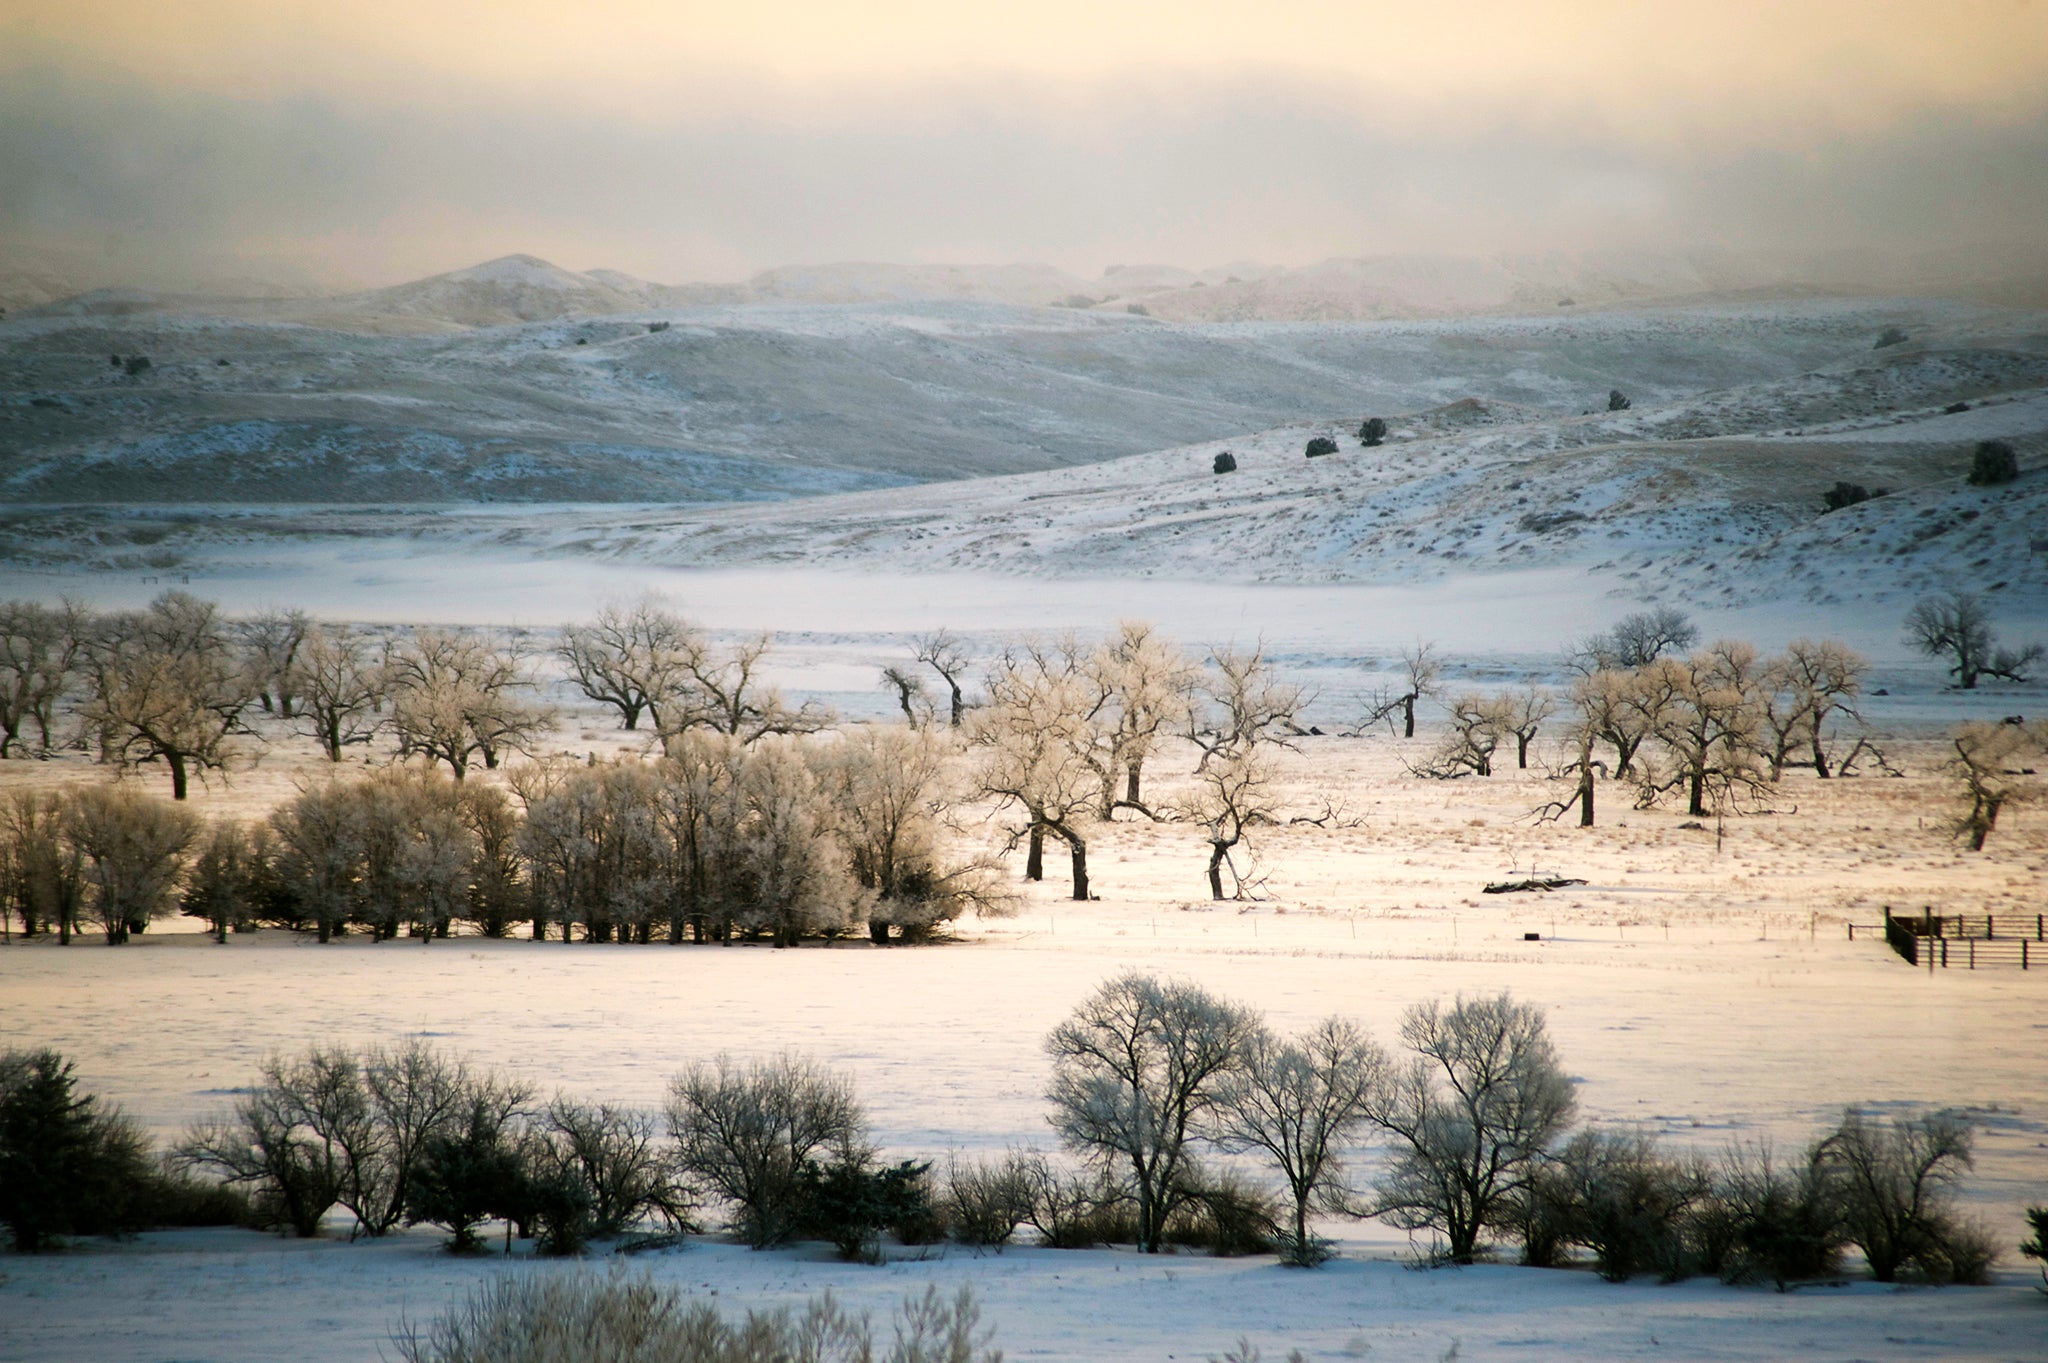 Snow covered prairies